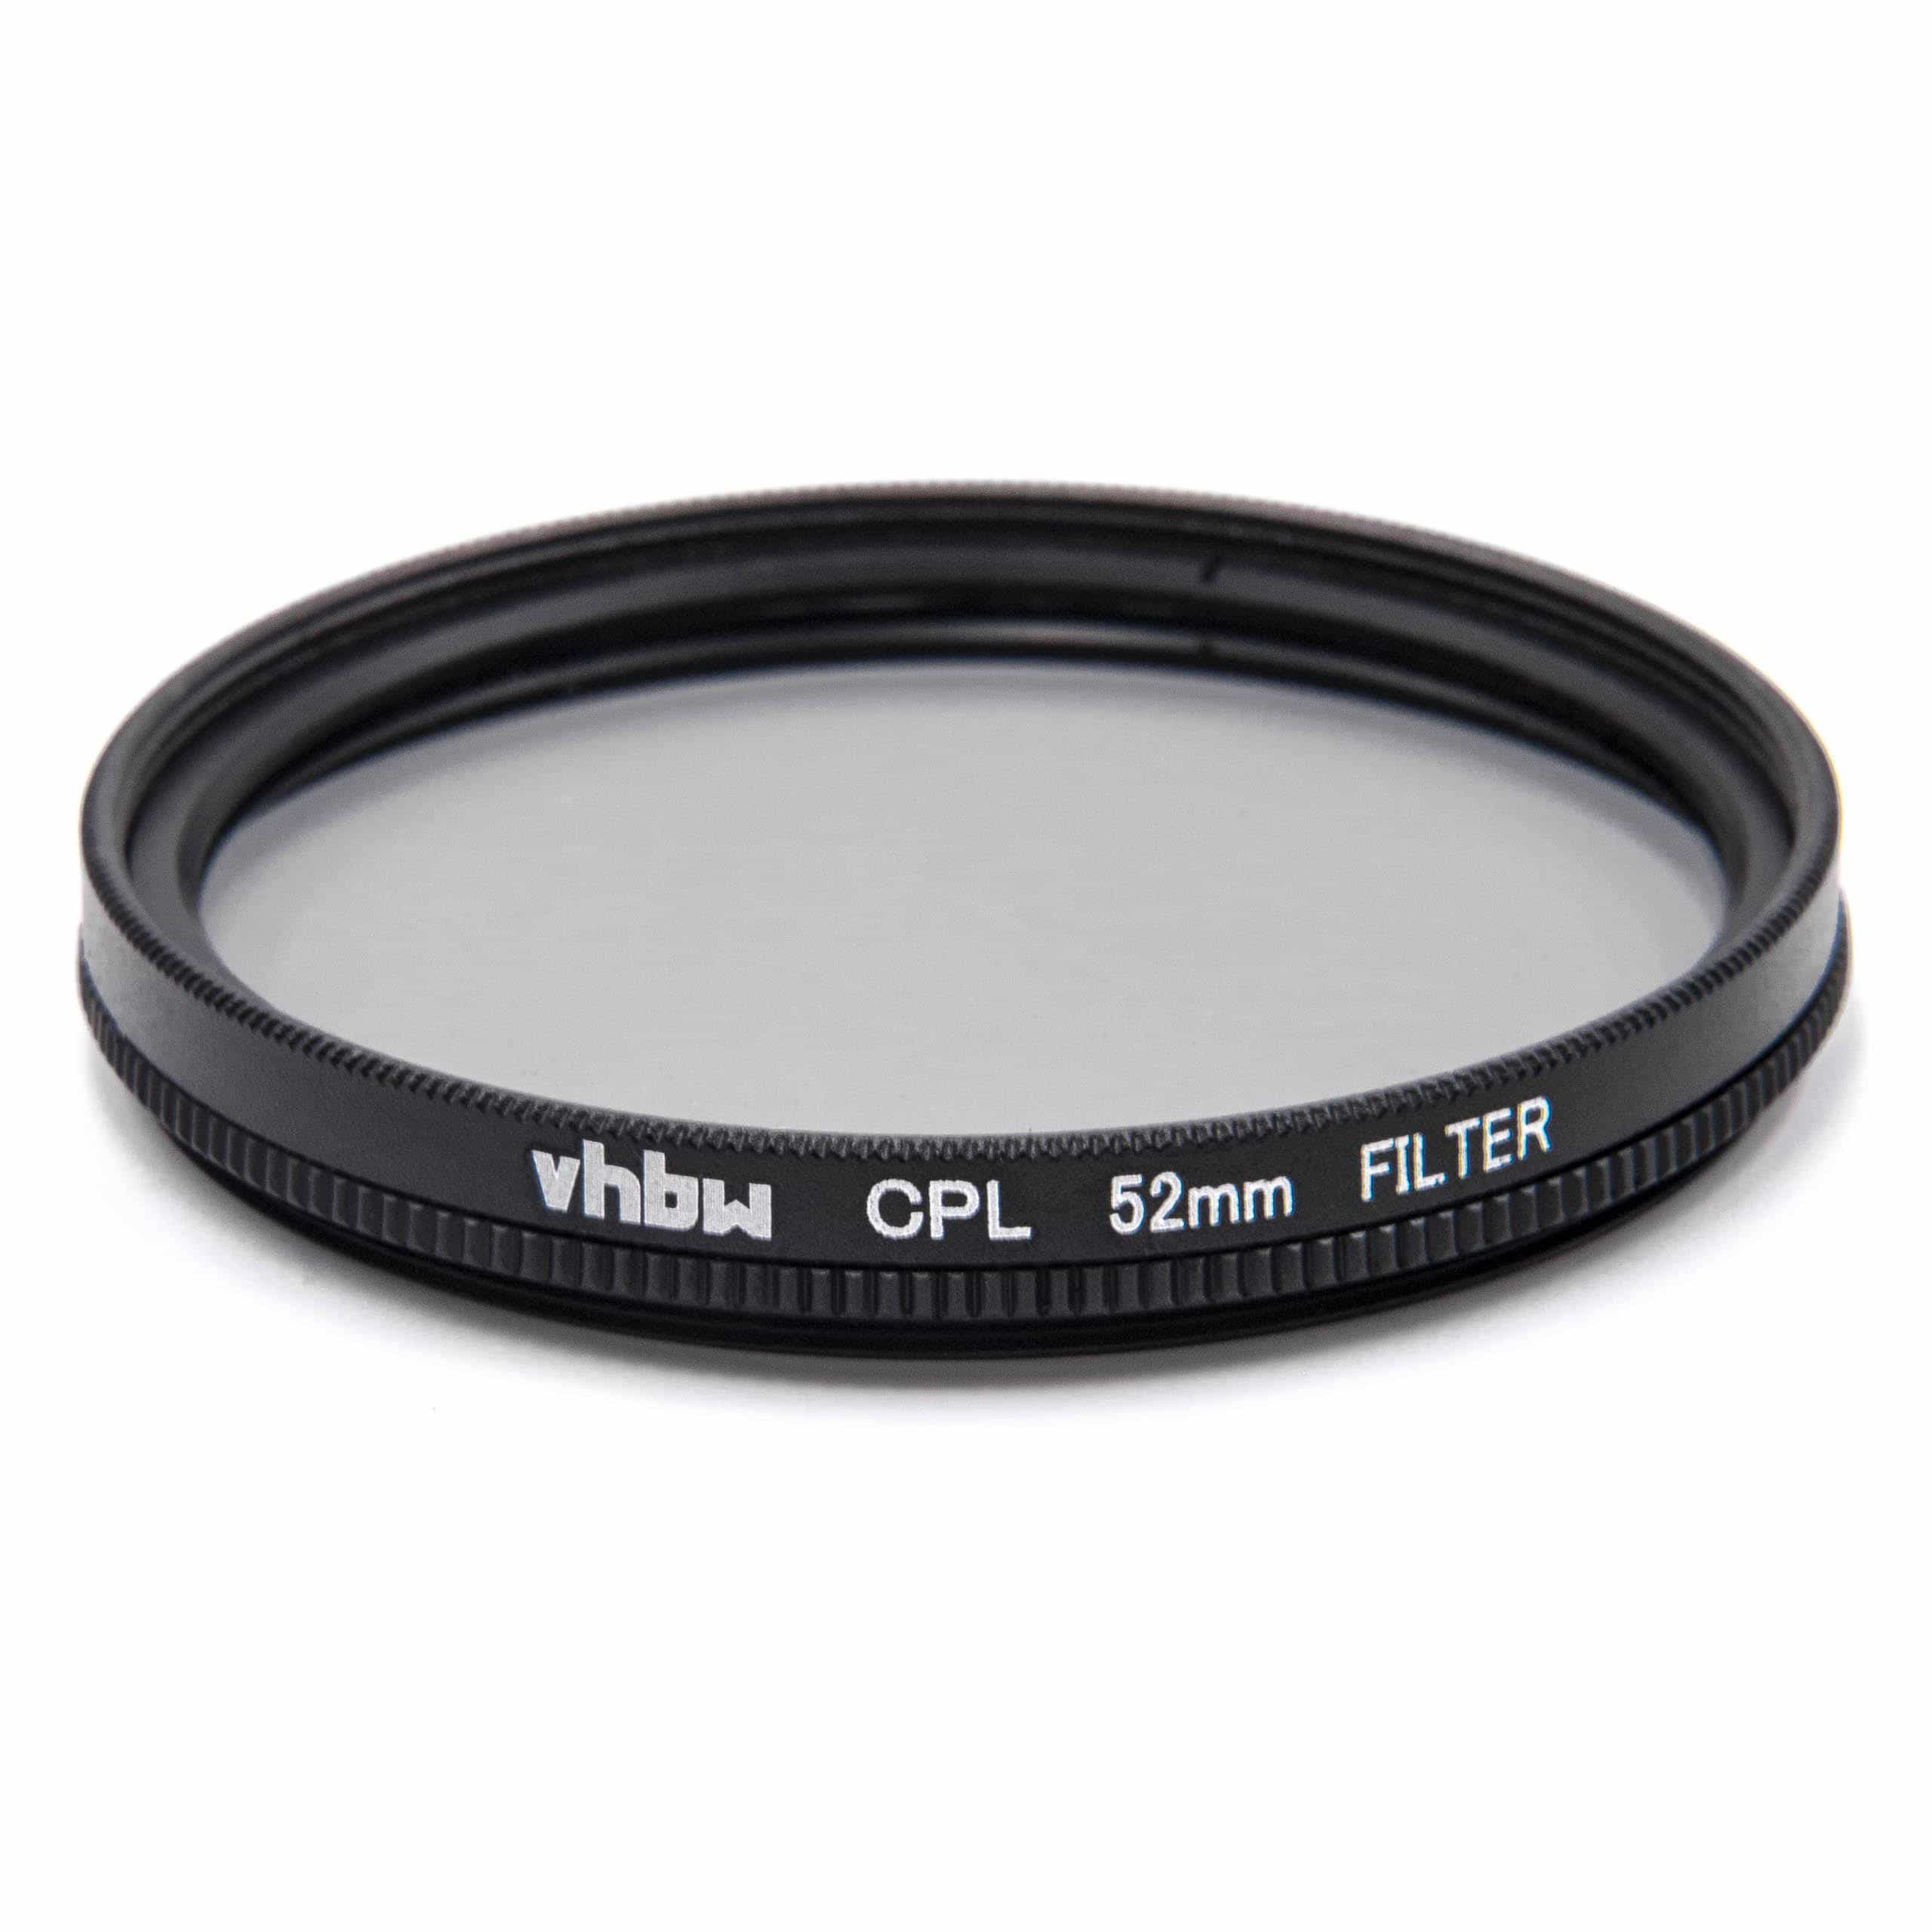 Filtr polaryzacyjny 52mm do różnych obiektywów aparatów - filtr CPL 